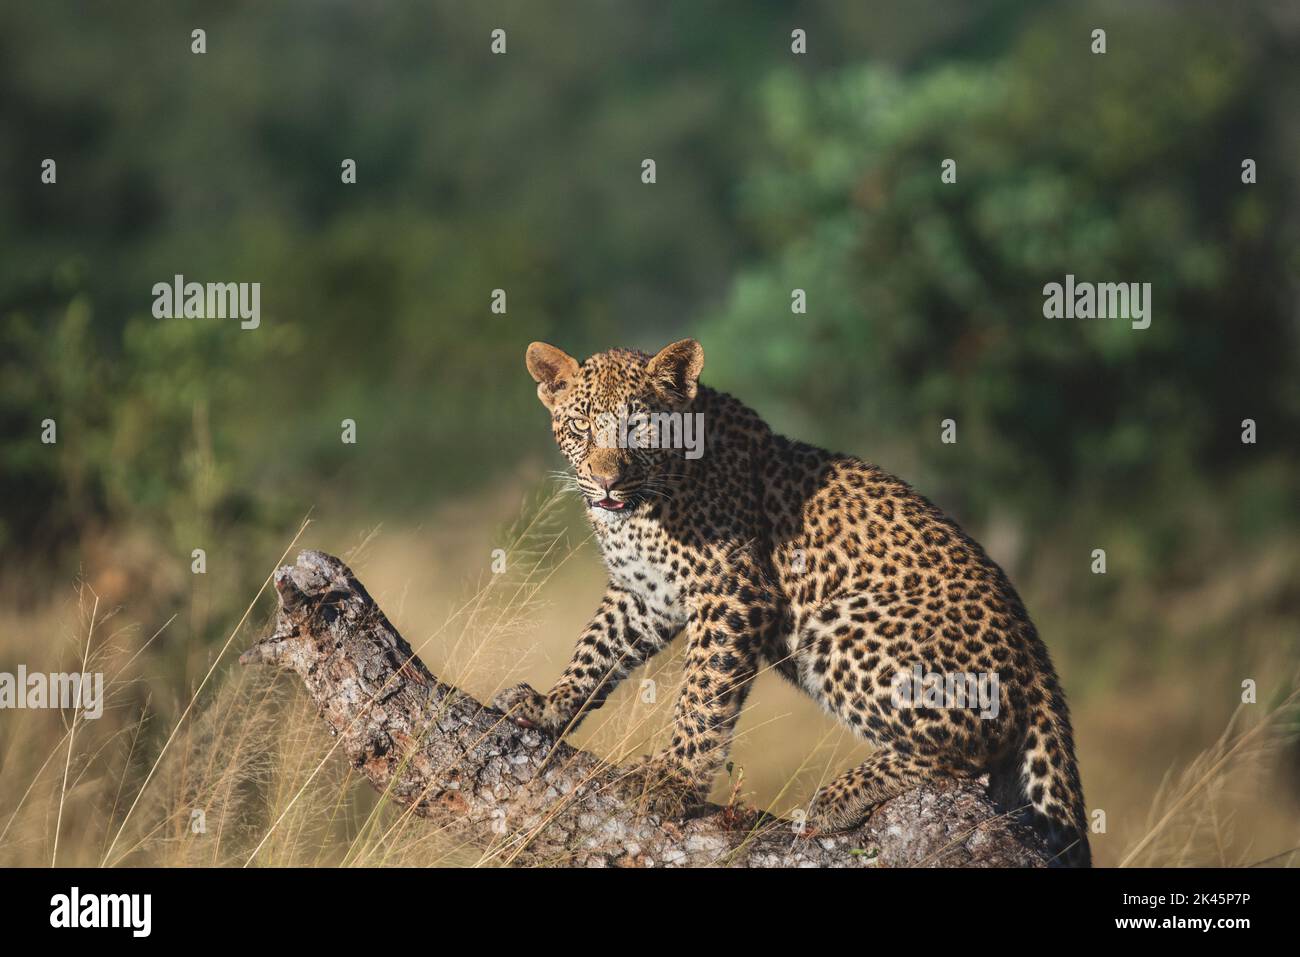 Un leopardo, Panthera pardus, se sienta sobre un marula caído, Sclerocarya birrea, mirada directa Foto de stock